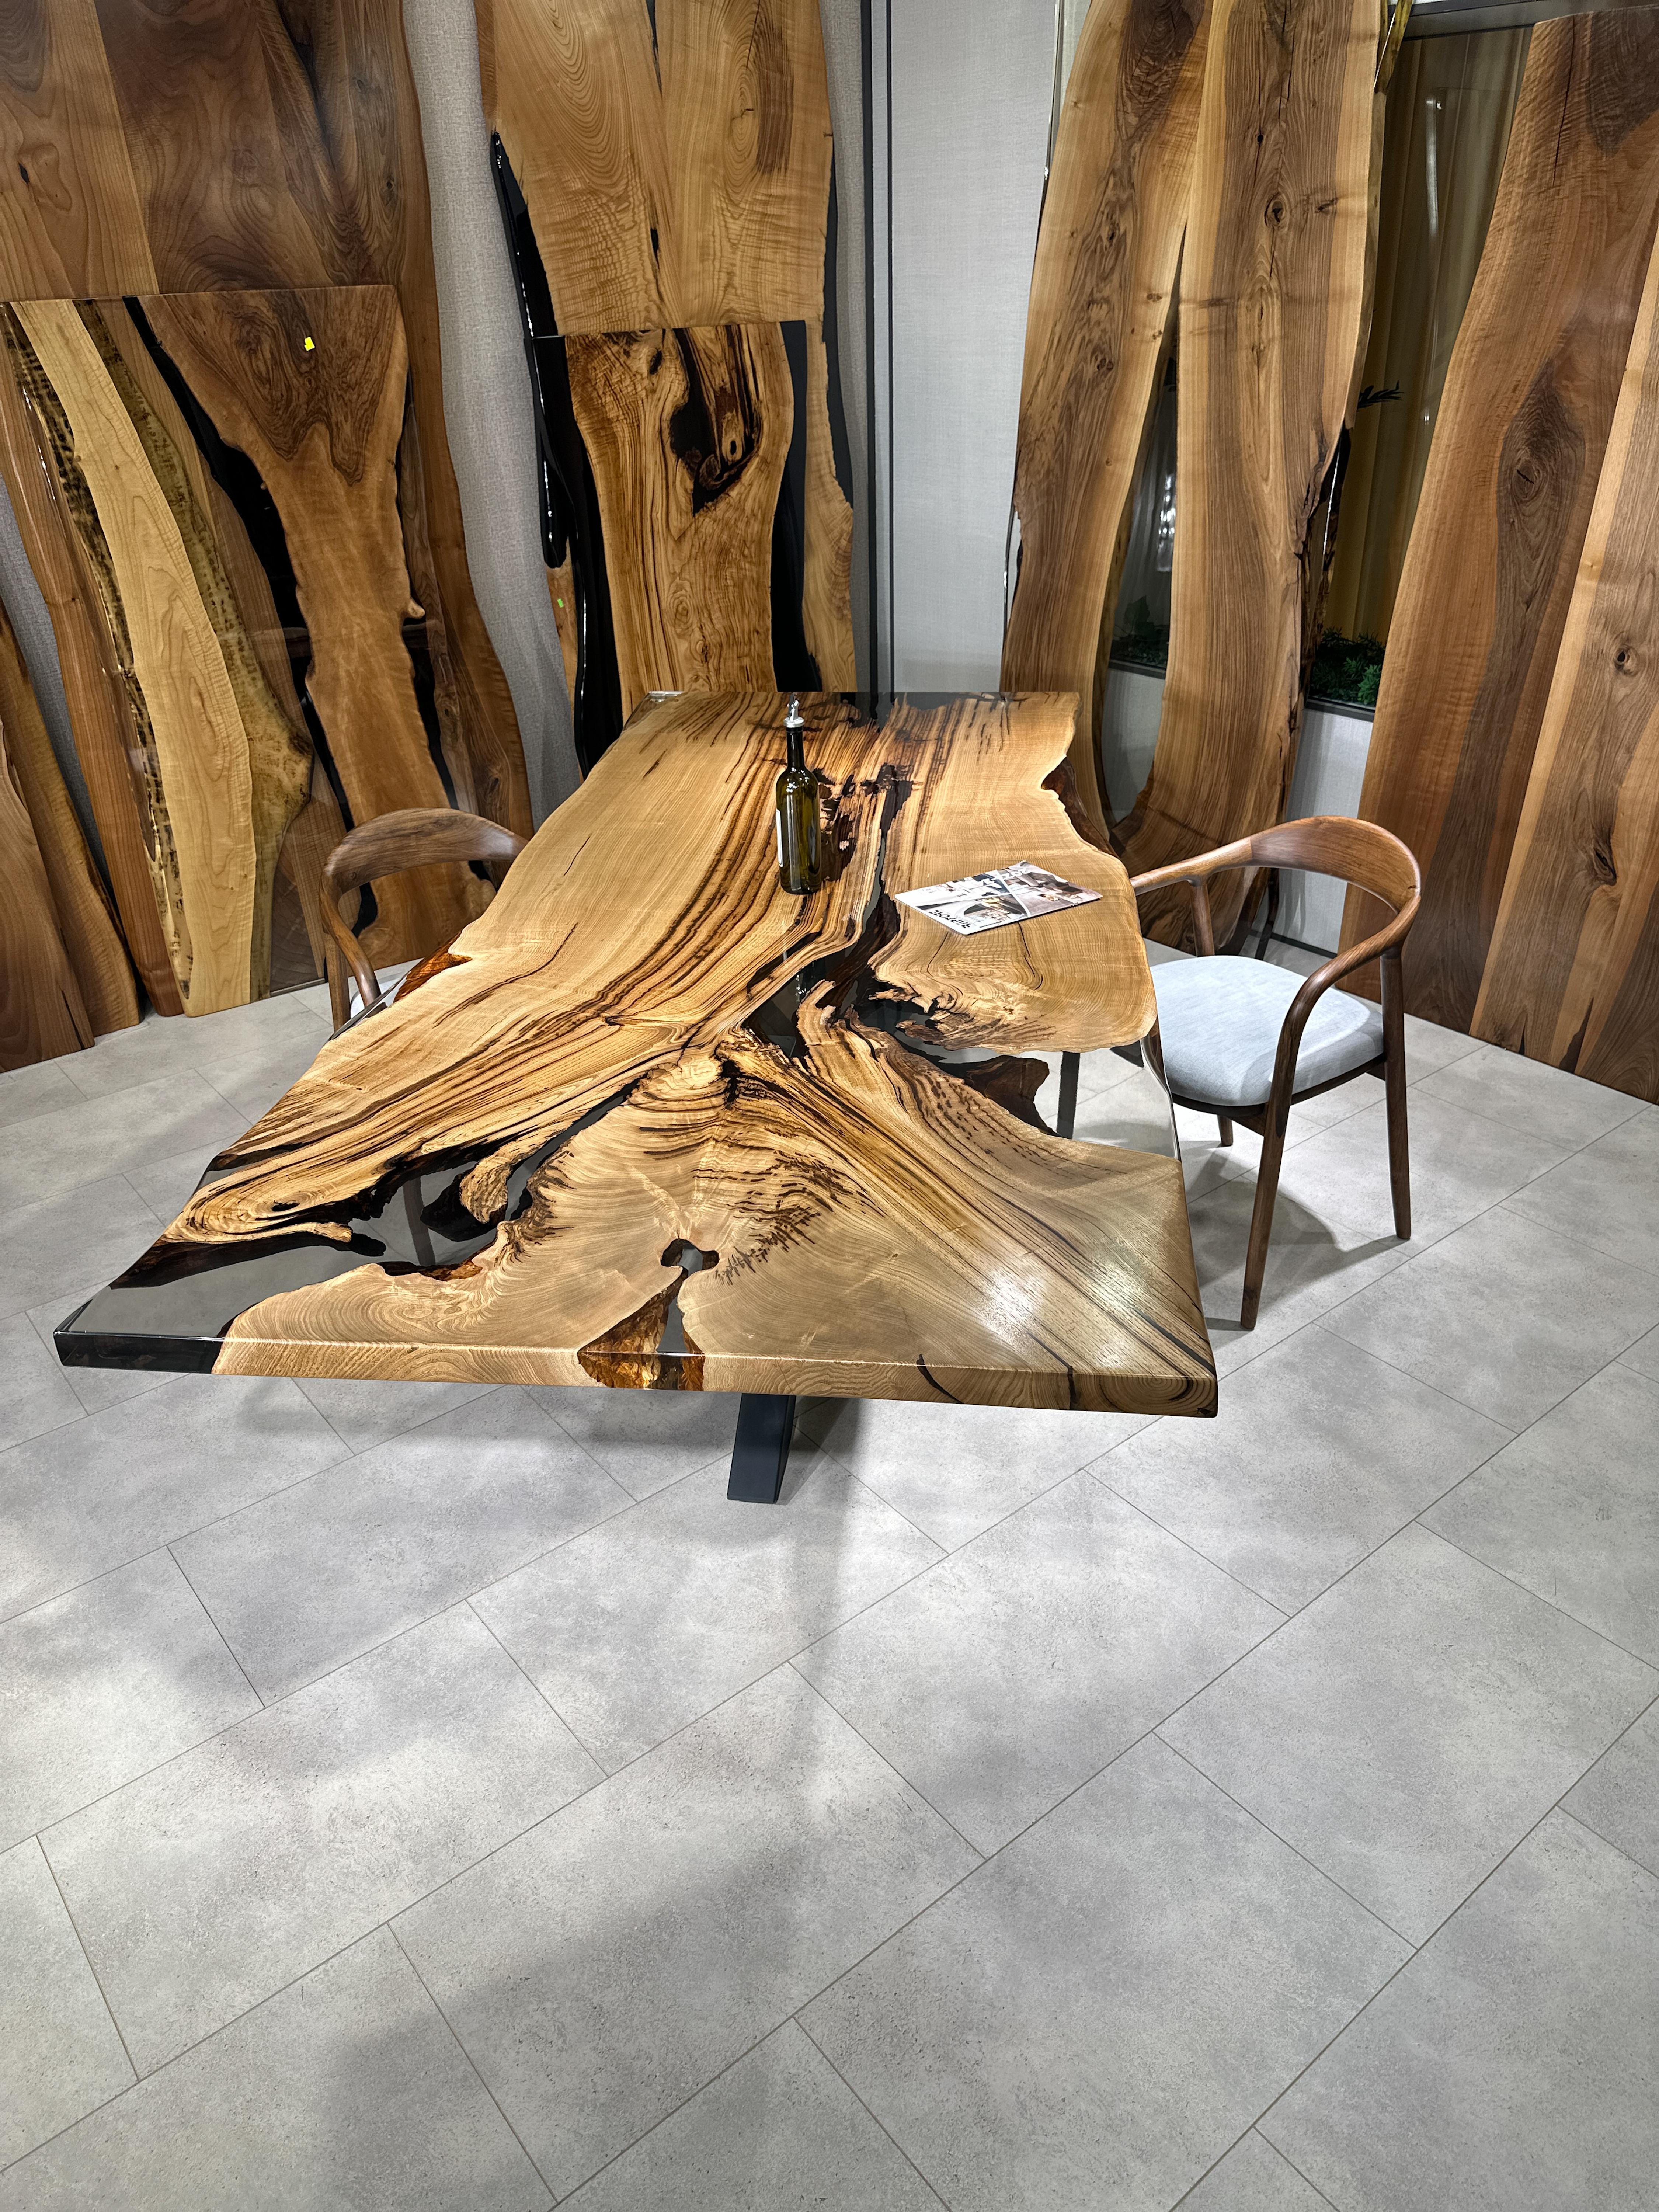 Table de salle à manger en résine époxy claire sur mesure en châtaignier 

Cette table est fabriquée en bois de châtaignier vieux de 500 ans. Les veines et la texture du bois décrivent l'aspect d'un bois de noyer naturel.
Elle peut être utilisée